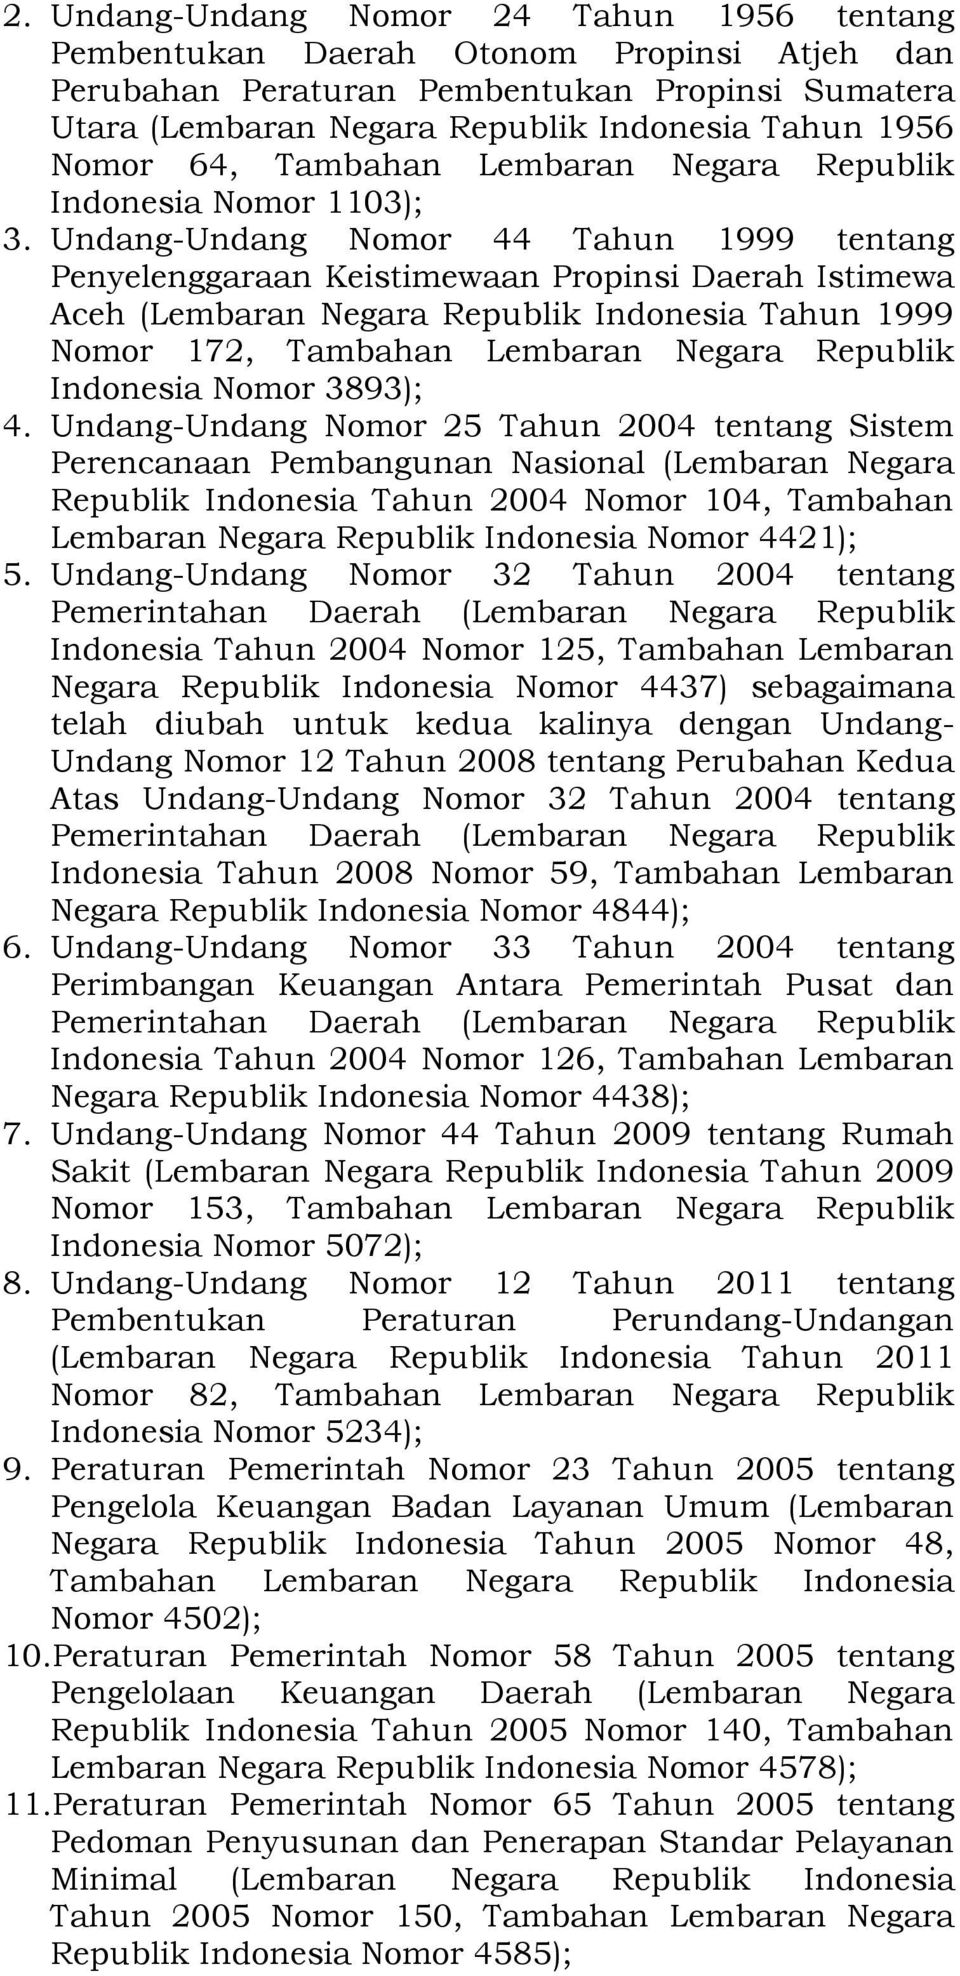 Undang-Undang Nomor 44 Tahun 1999 tentang Penyelenggaraan Keistimewaan Propinsi Daerah Istimewa Aceh (Lembaran Negara Republik Indonesia Tahun 1999 Nomor 172, Tambahan Lembaran Negara Republik